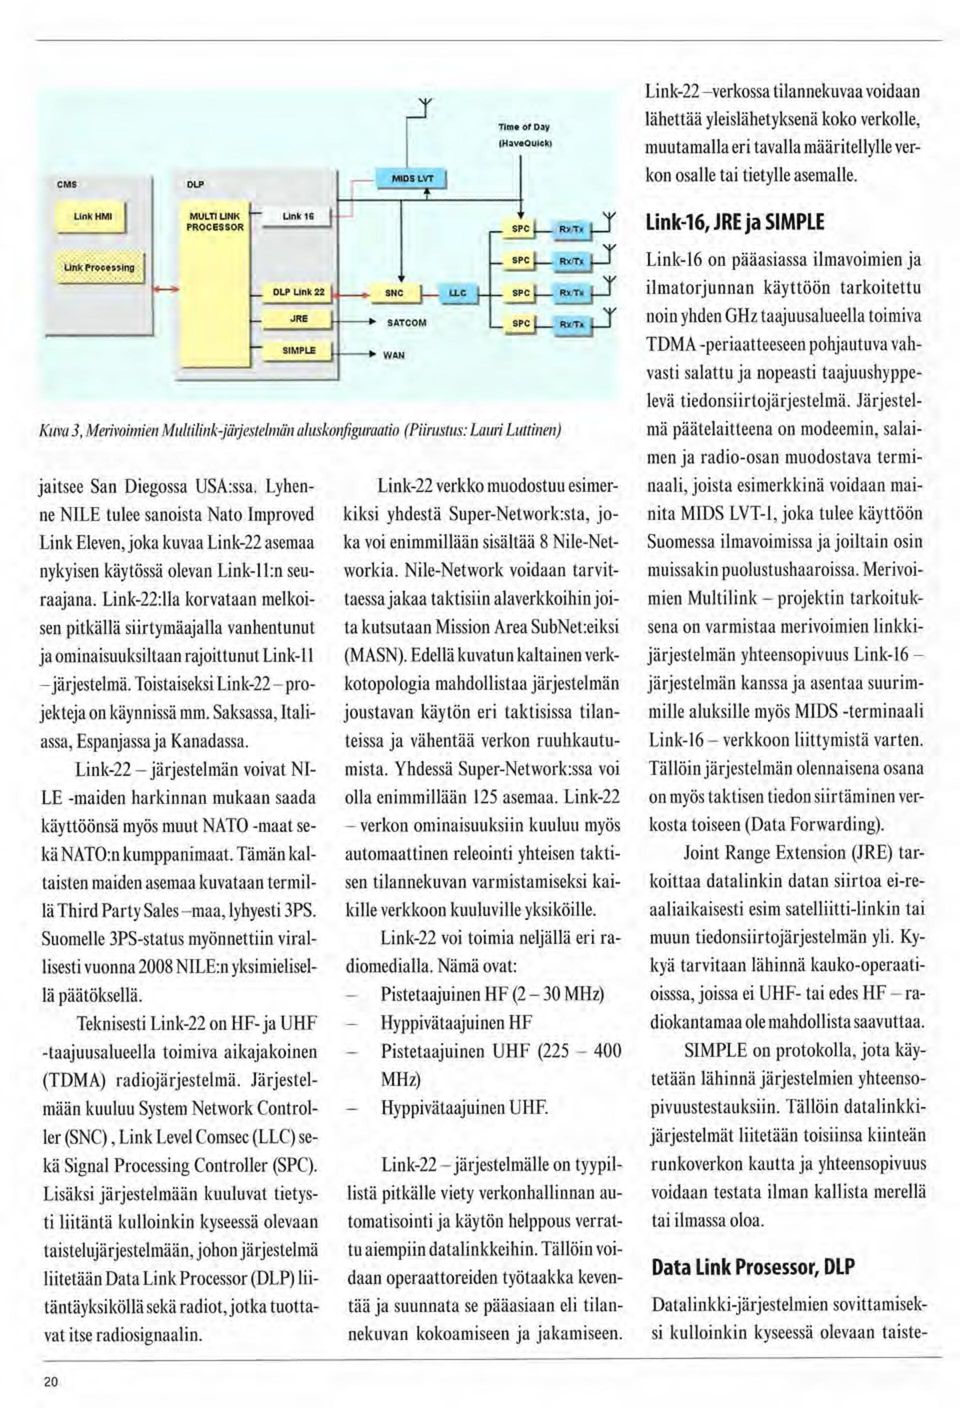 SPC I RxTl SPC i RxTx SPC J RXTK Kuva 3, Merivoimien Multilink-järjestelmän aluskonfiguraatio (Piirustus: Lauri Luttinen) jaitsee San Diegossa USA:ssa.